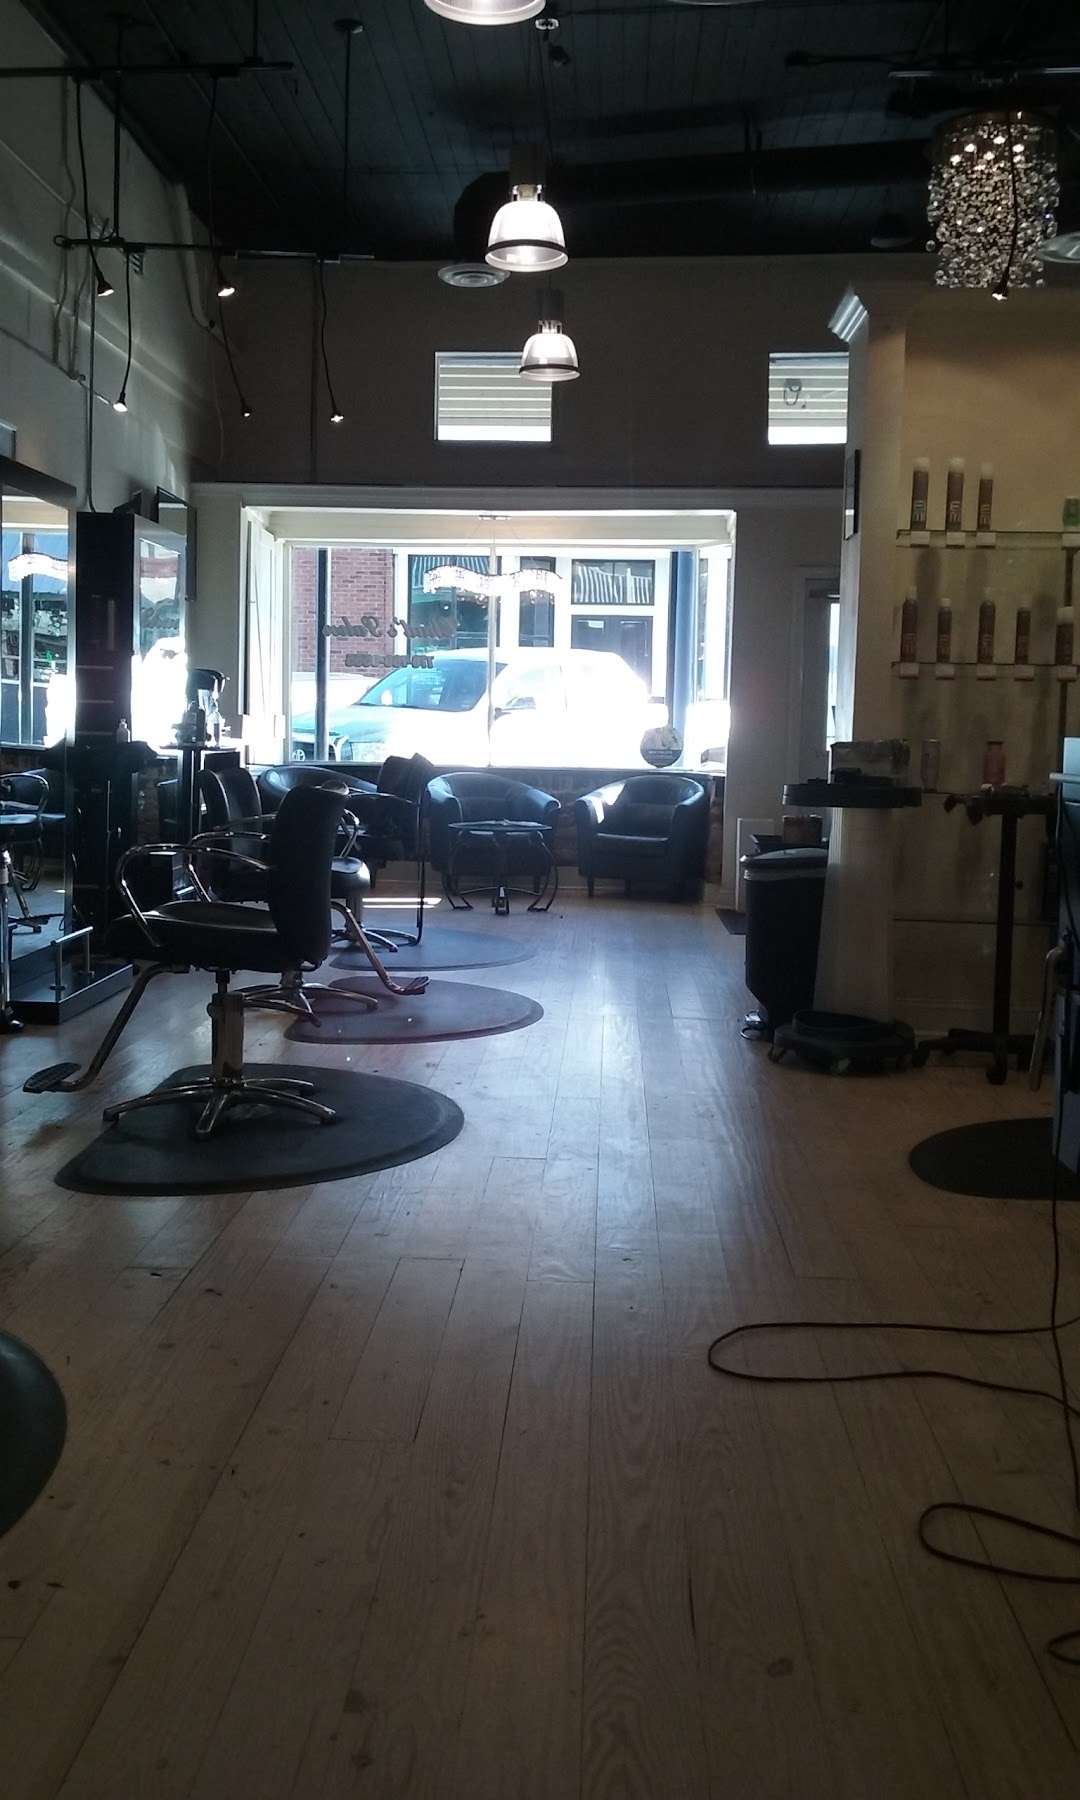 Chads Salon & Hair Spa